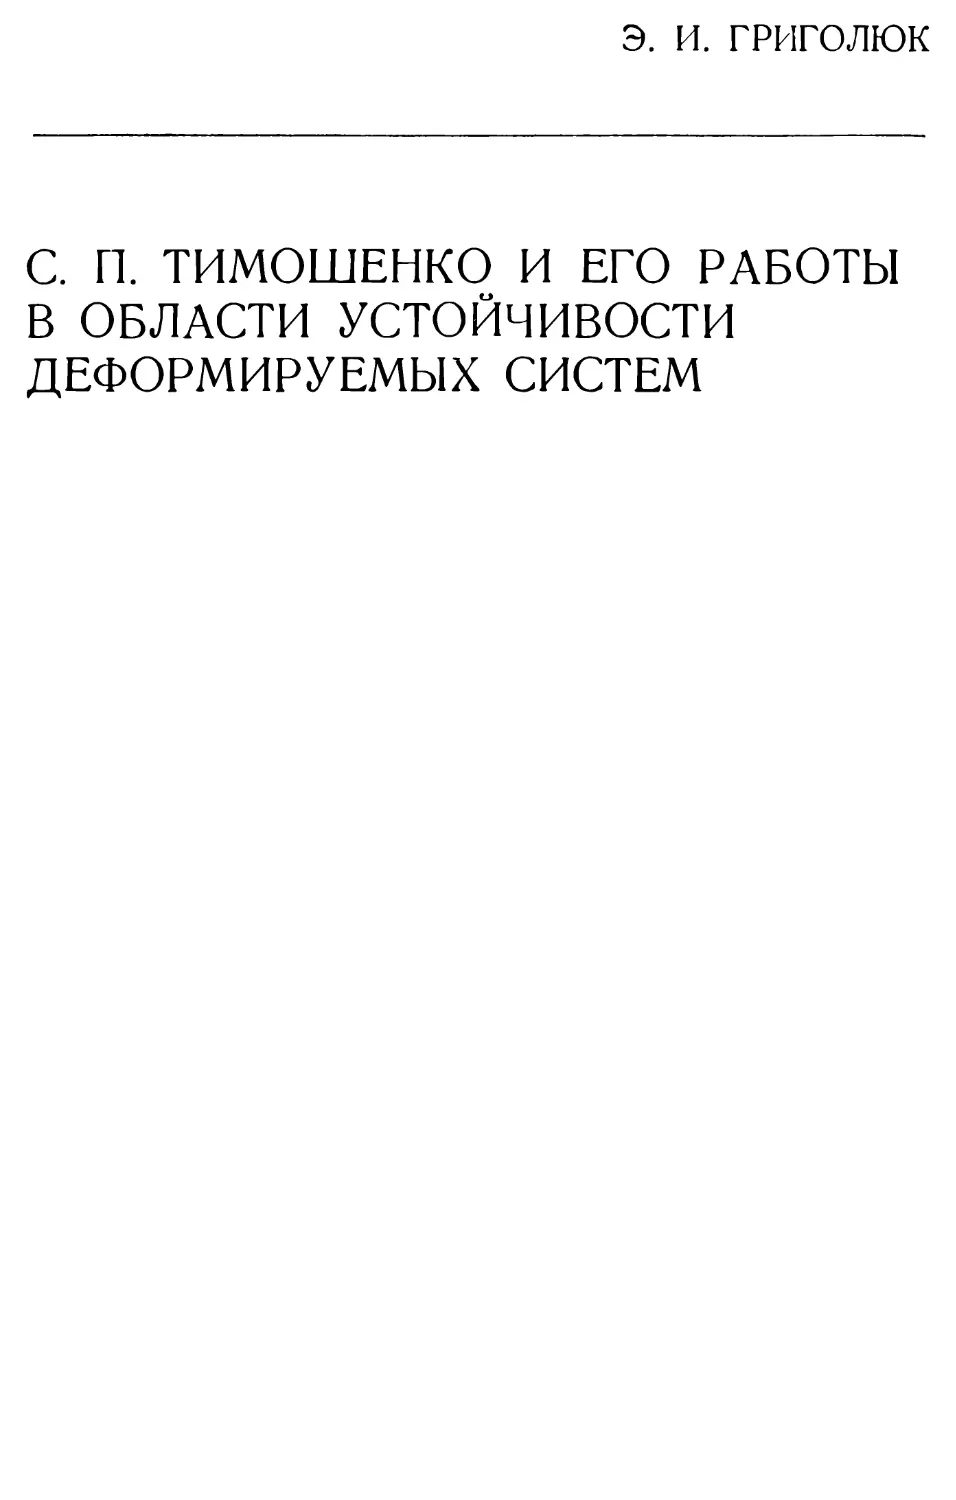 XVIII. С. П. Тимошенко и его работы в области устойчивости деформируемых систем